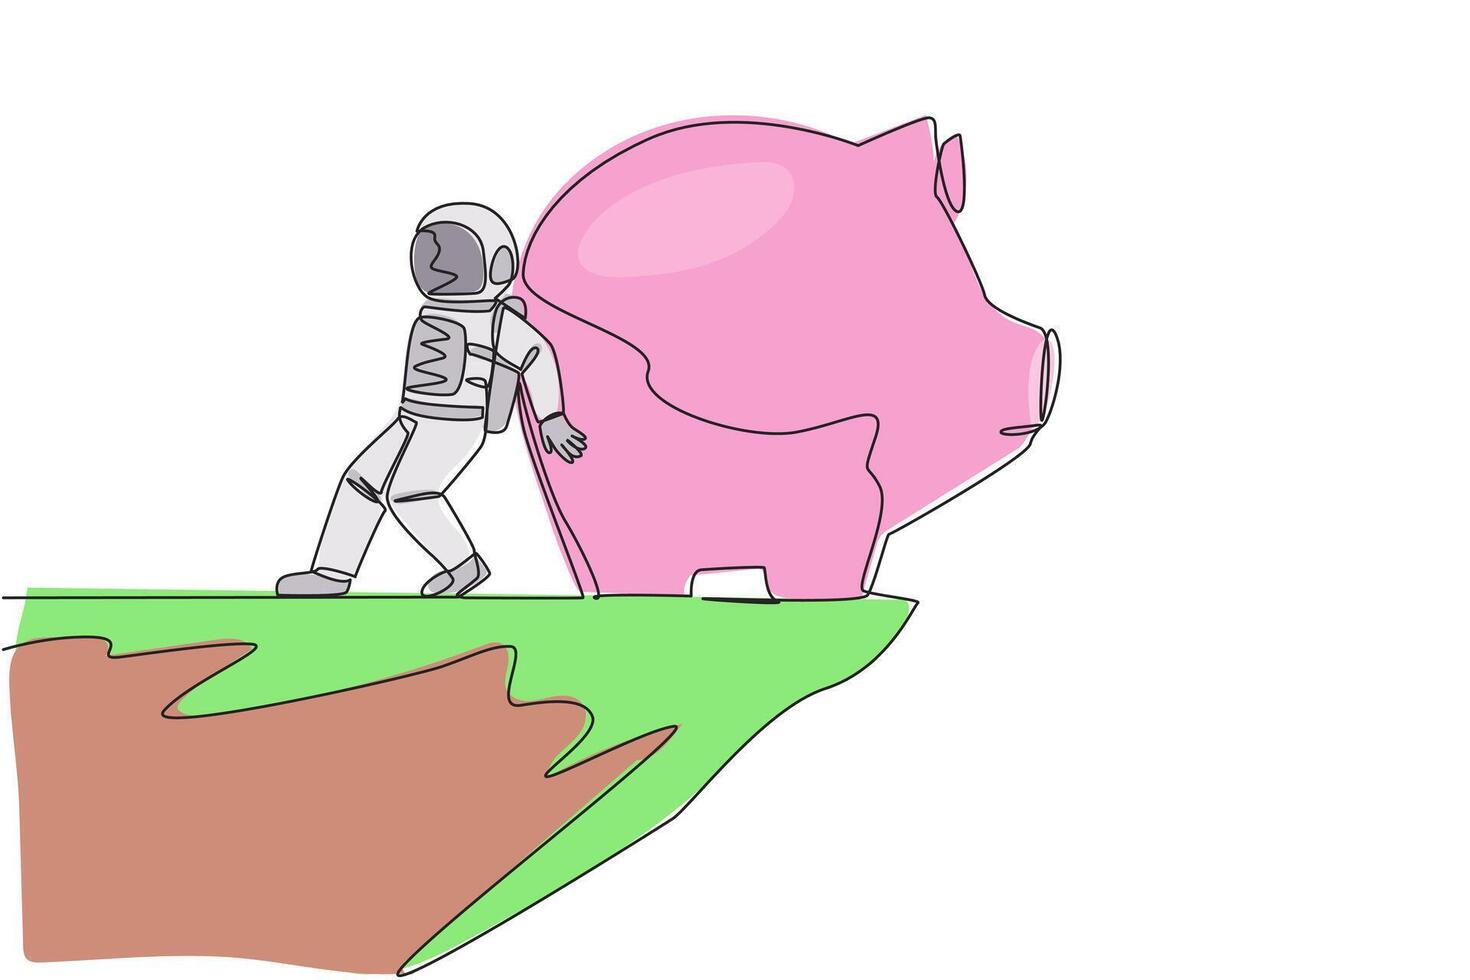 Single kontinuierlich Linie Zeichnung Astronaut geschoben Riese Schweinchen Bank Nieder mit seine zurück von das Kante von das Cliff. gescheitert zu speichern, das Schweinchen Bank ist immer leer. einer Linie Design Vektor Illustration